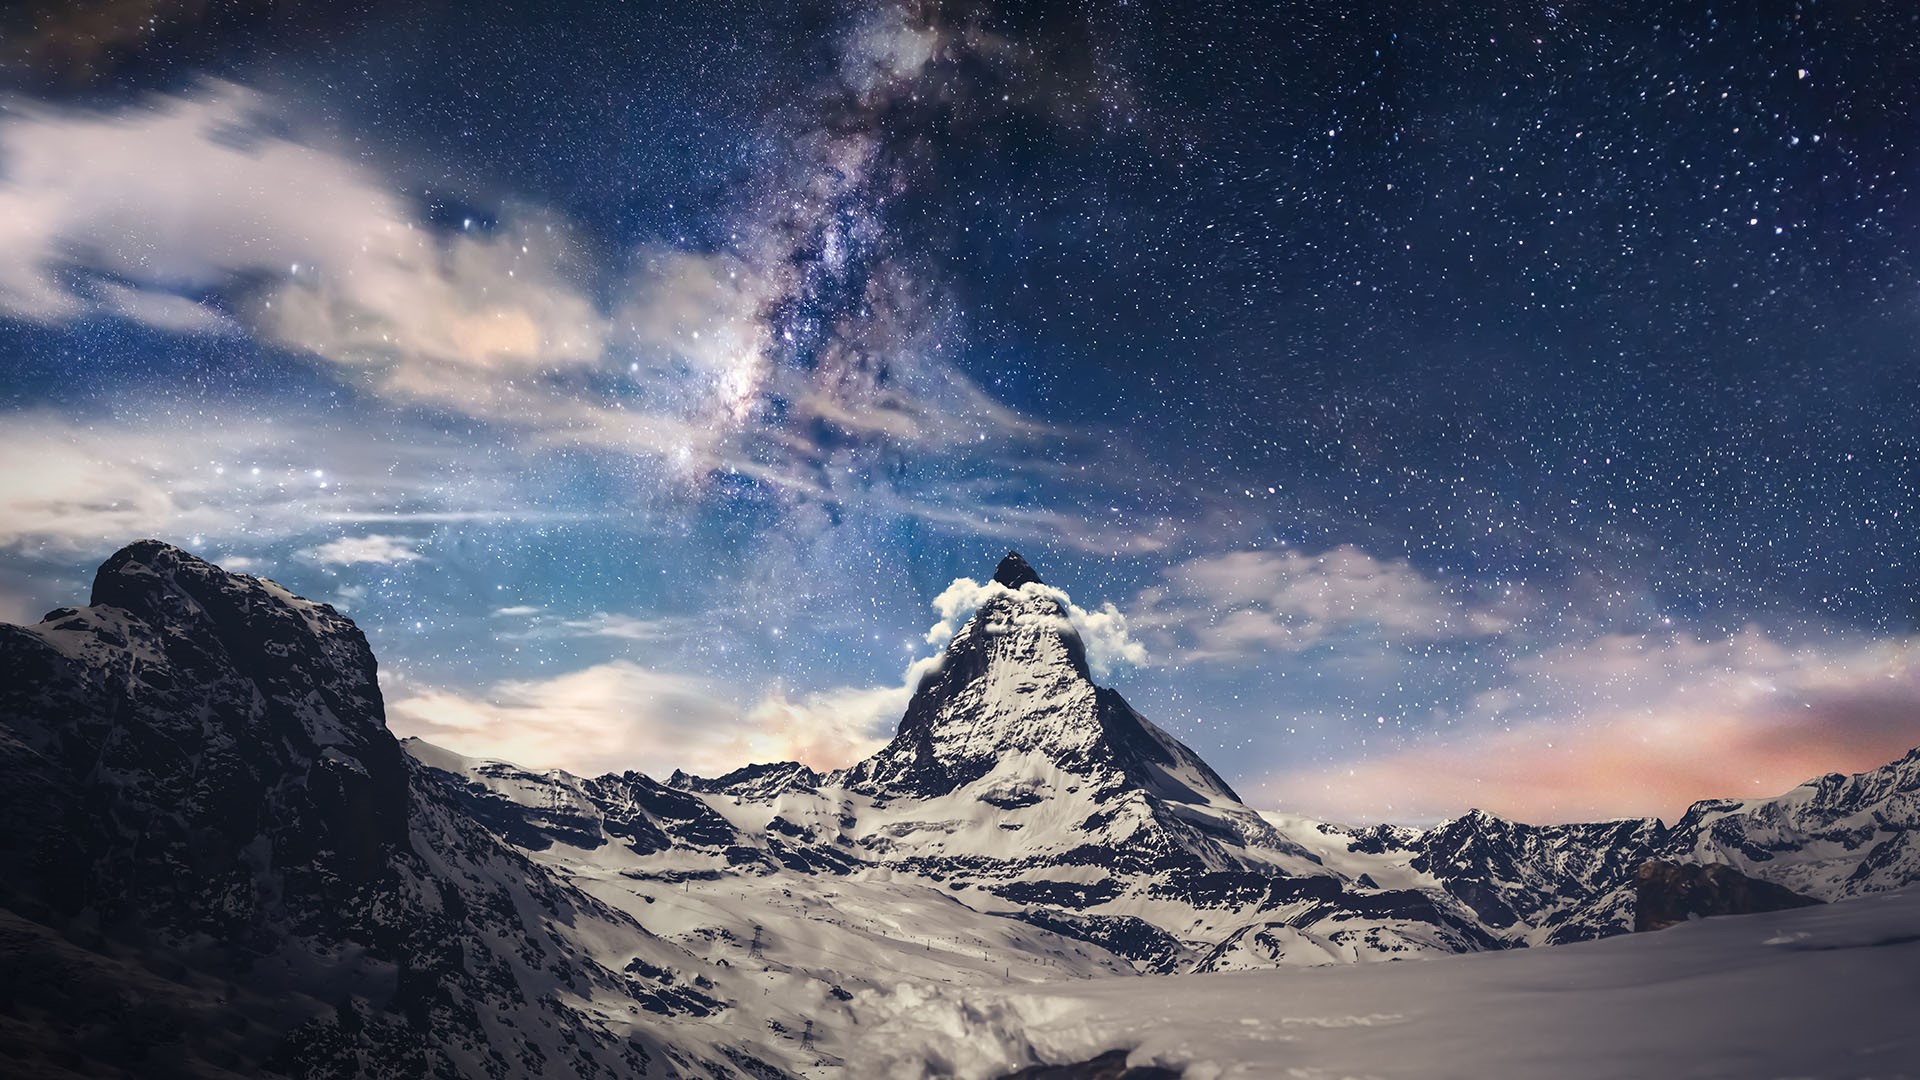 Zermatt-Matterhorn Aerial View At Night Wallpapers